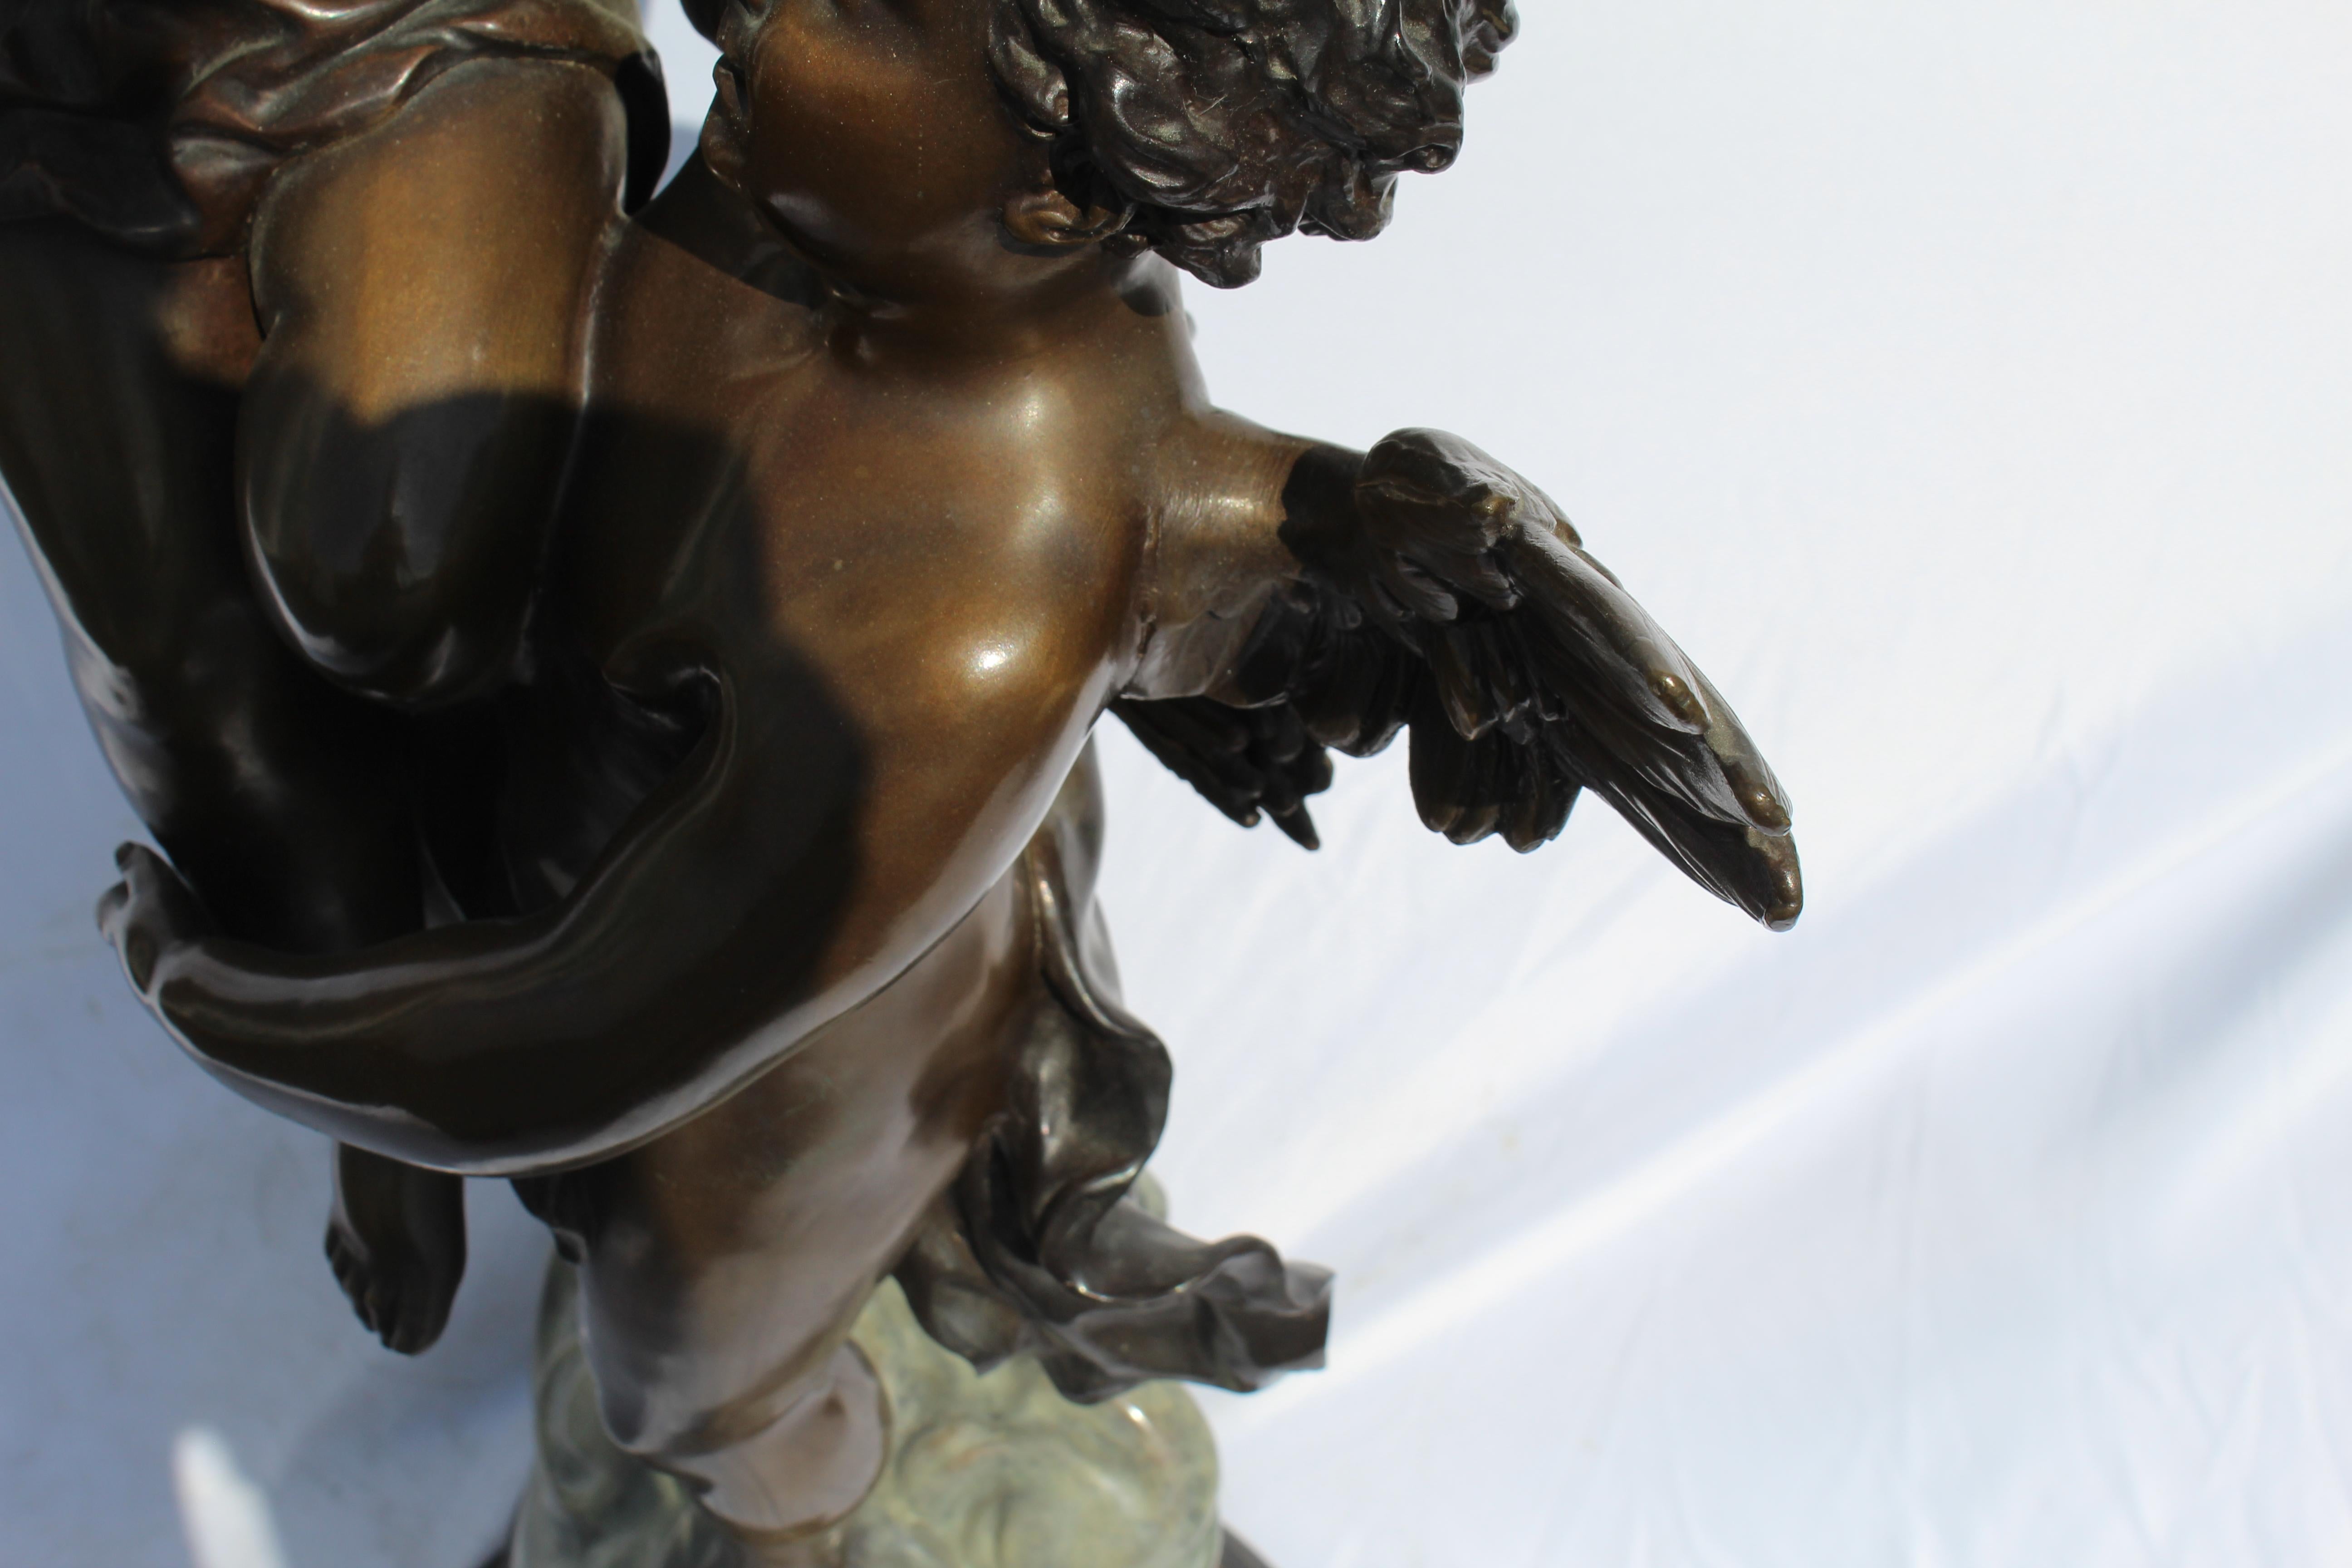 Art Nouveau Bronze, Double Figures, Large, Title is 'The Triumphator' 1